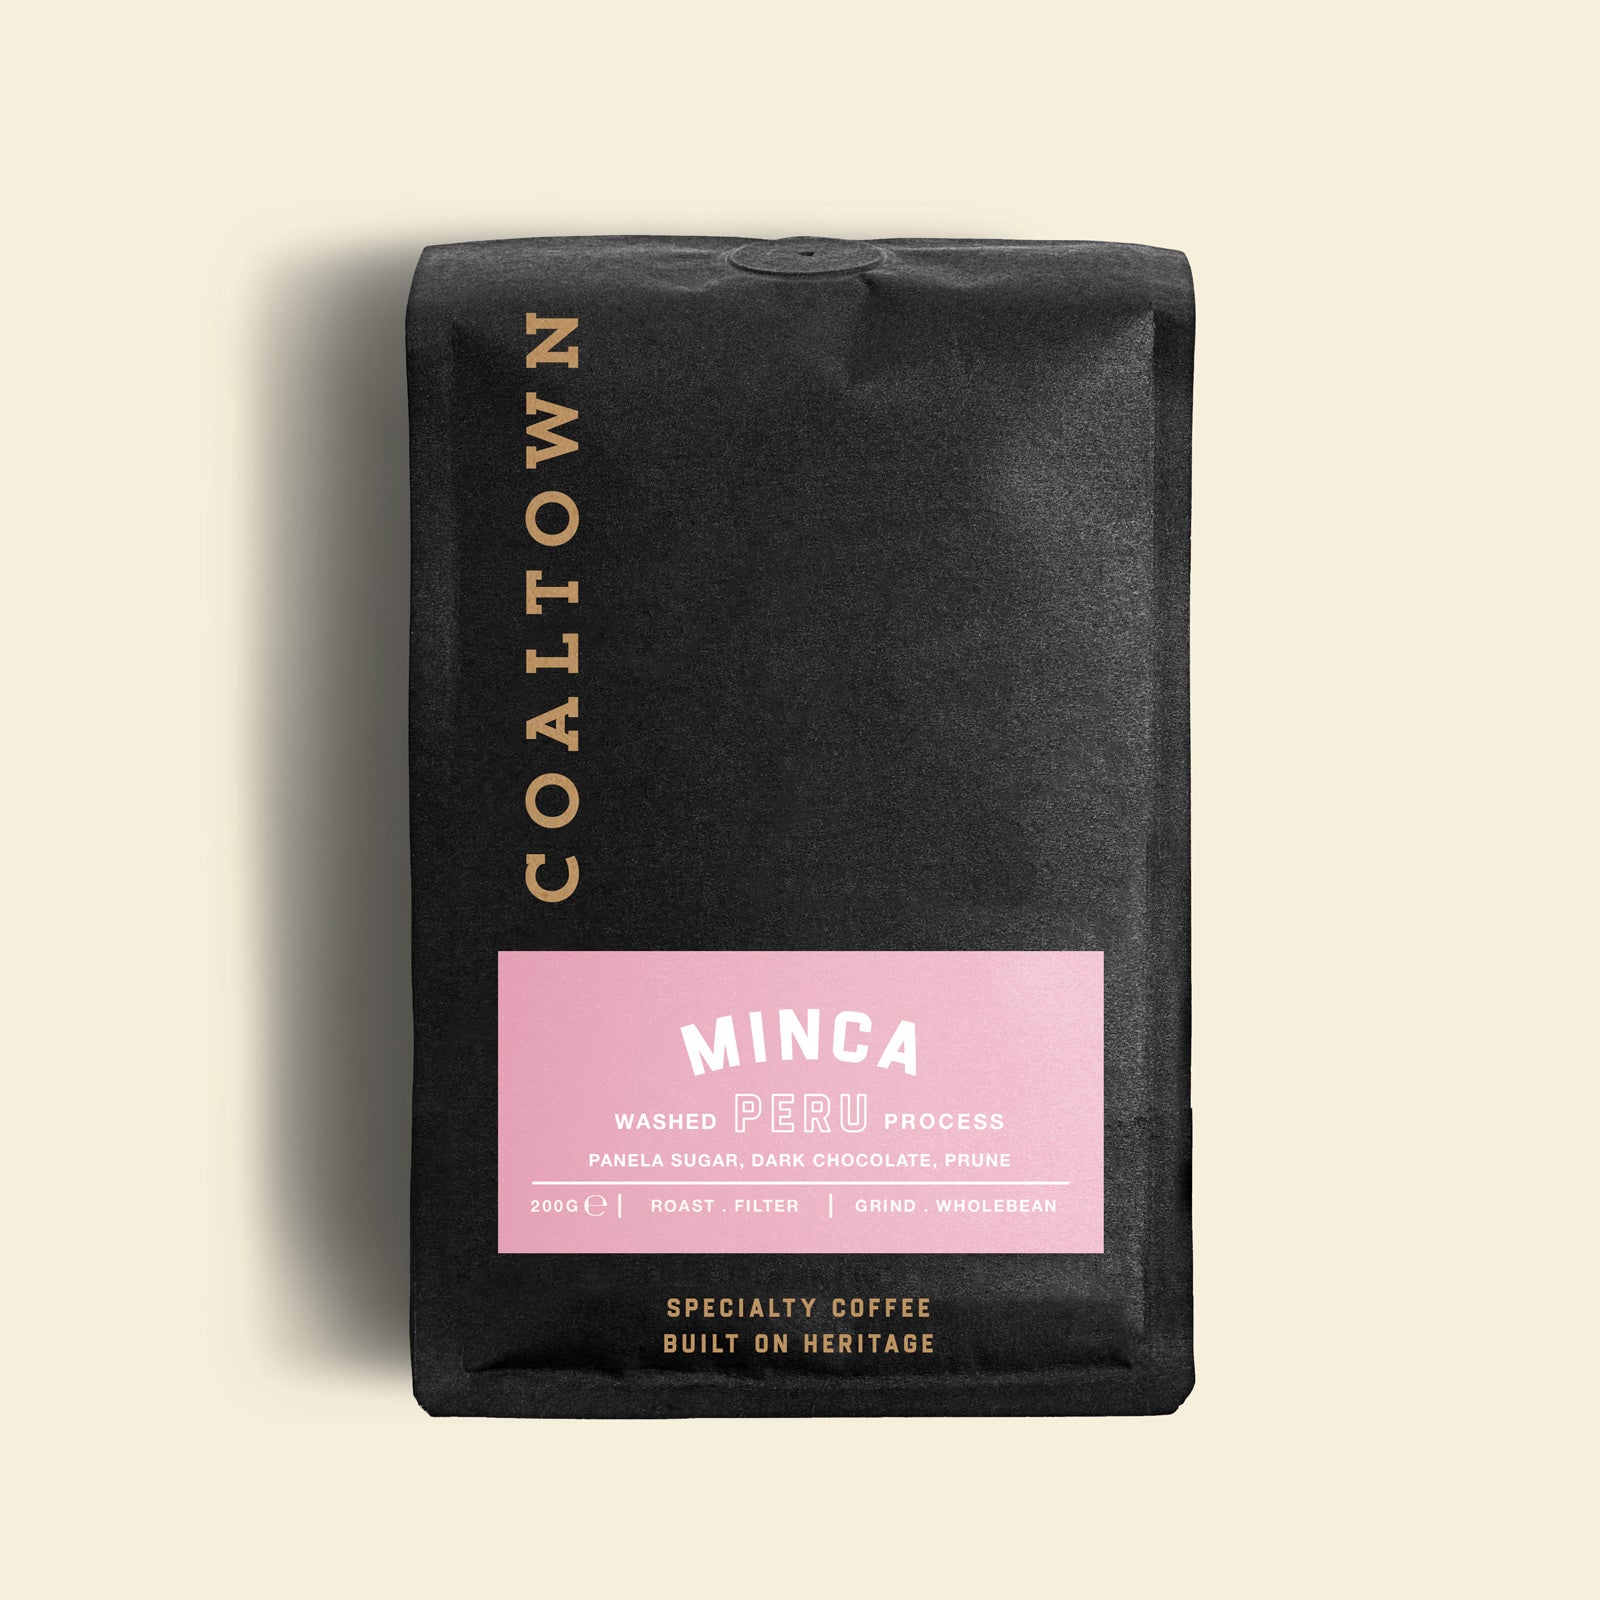 Minca Peru Single Origin Coffee 200g Bag